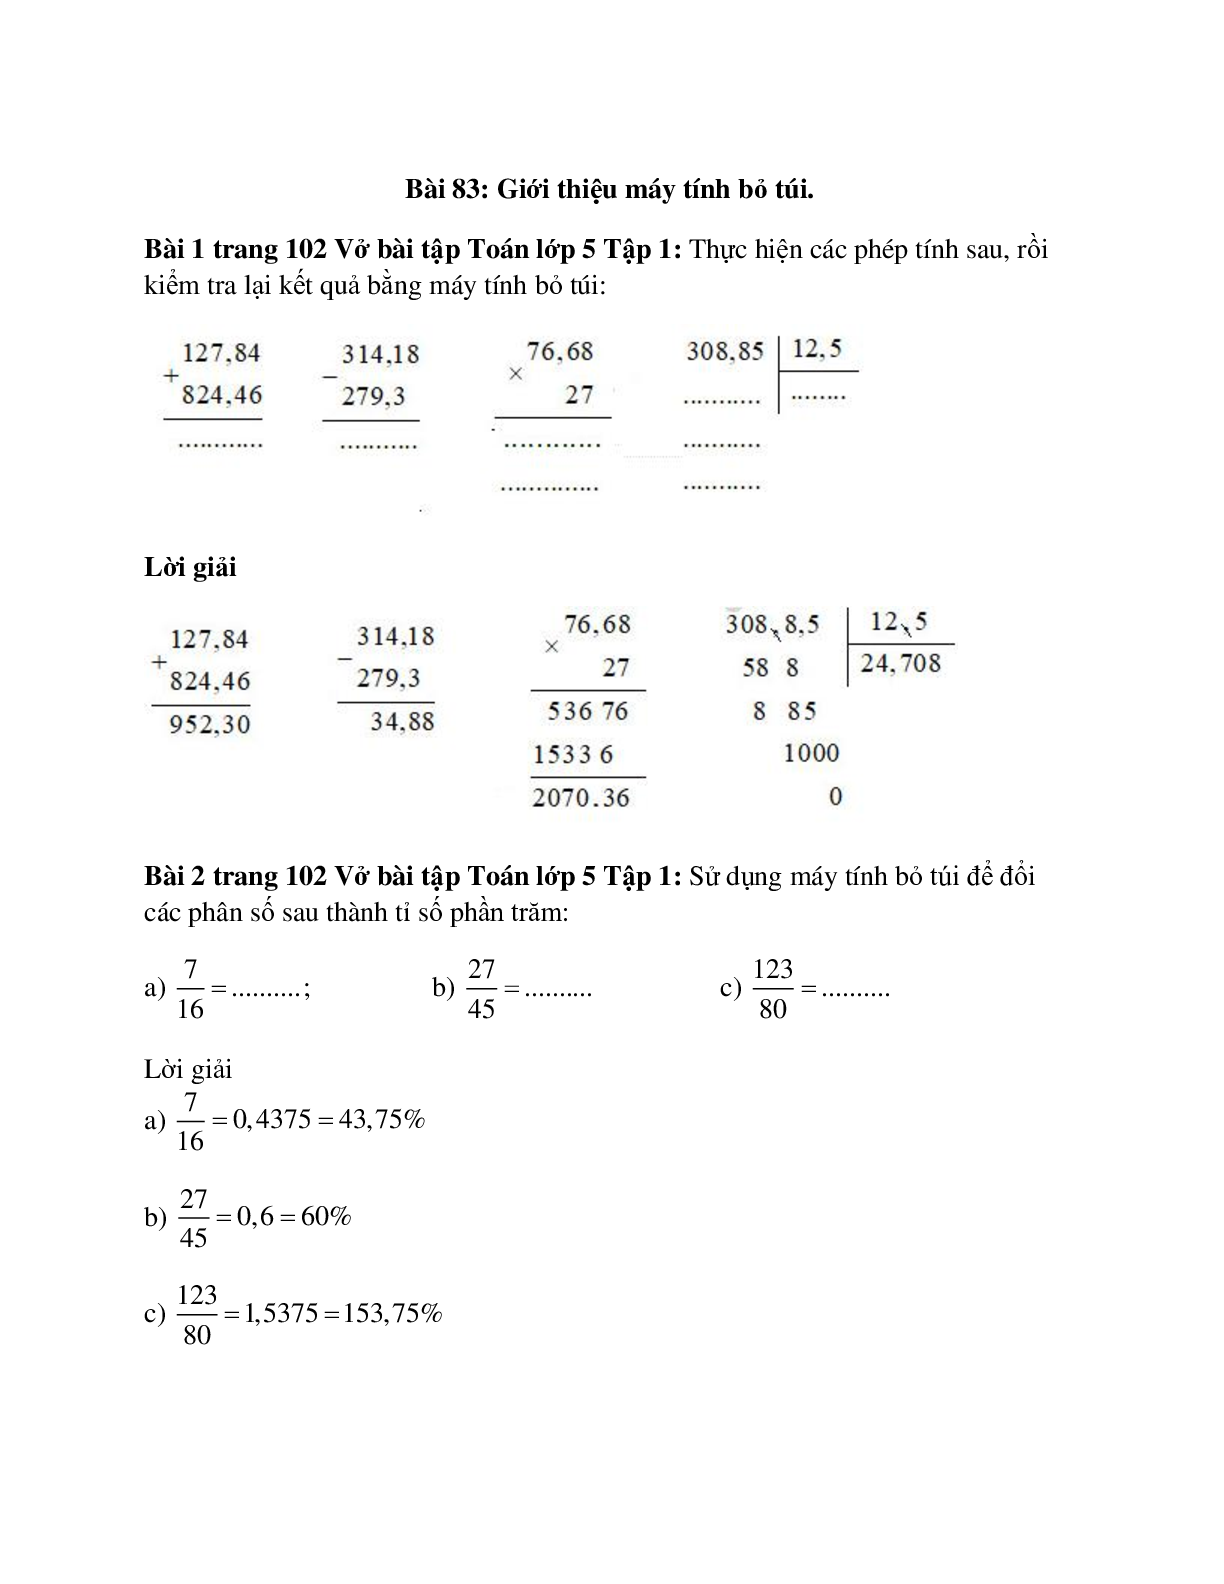 Vở bài tập Toán lớp 5 Tập 1 trang 102 Bài 83: Giới thiệu máy tính bỏ túi (trang 1)